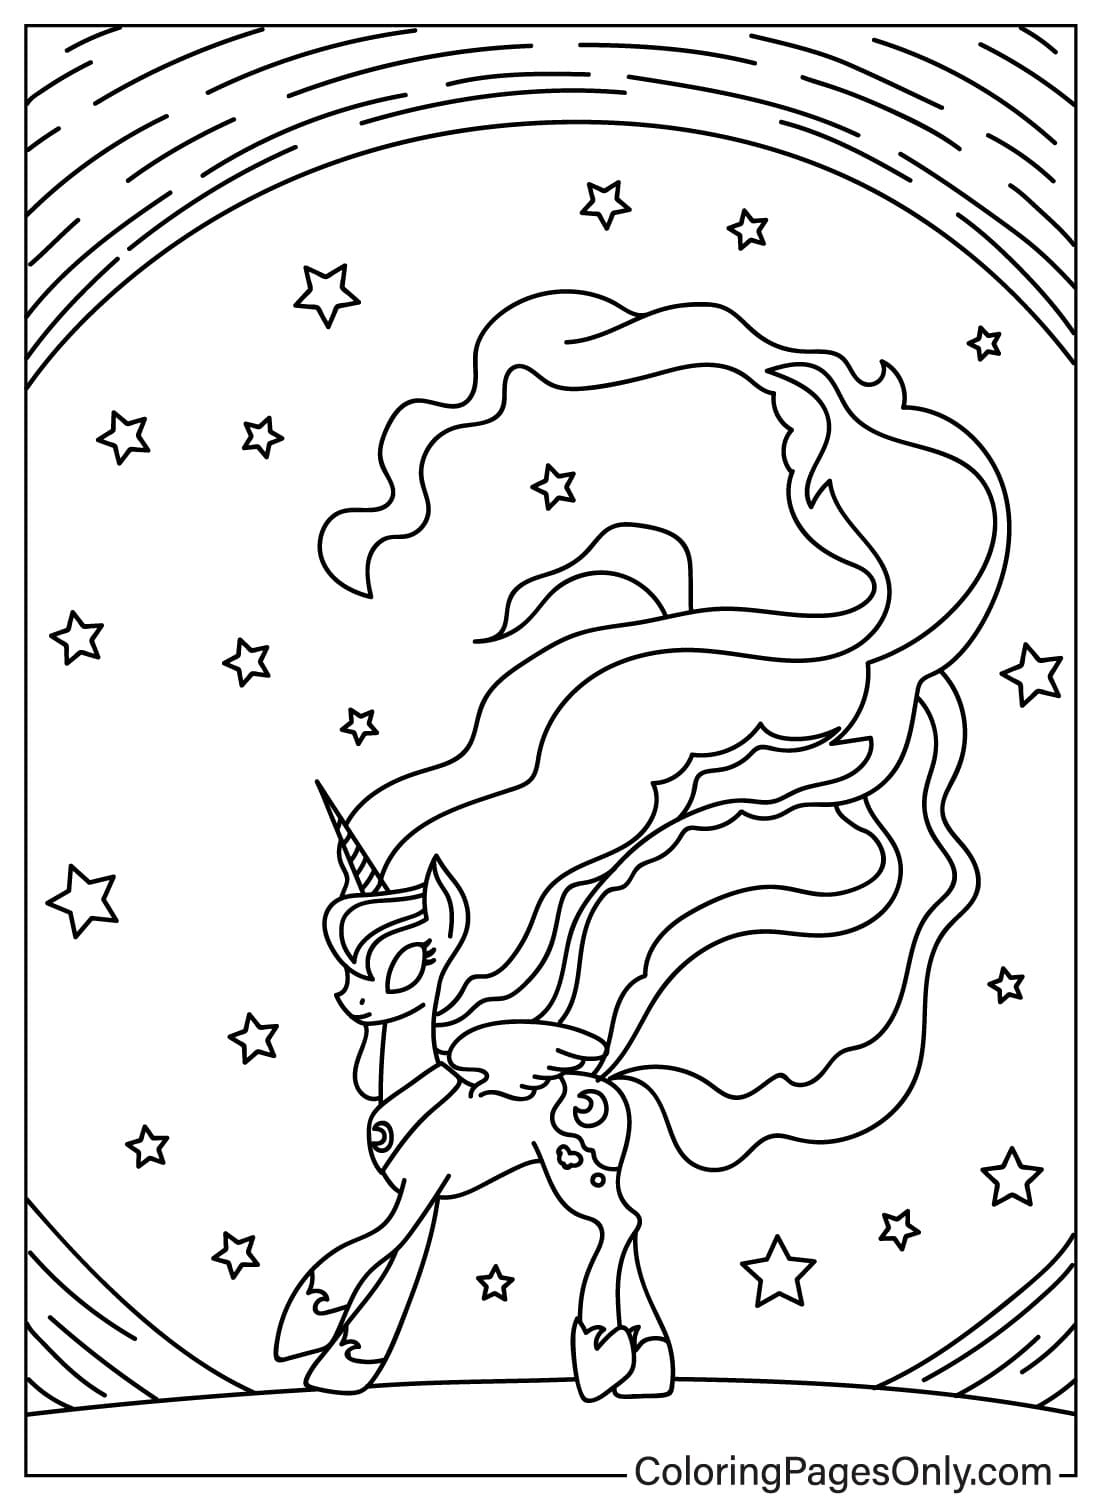 Página para colorear de la Princesa Luna y el cielo estrellado de la Princesa Luna